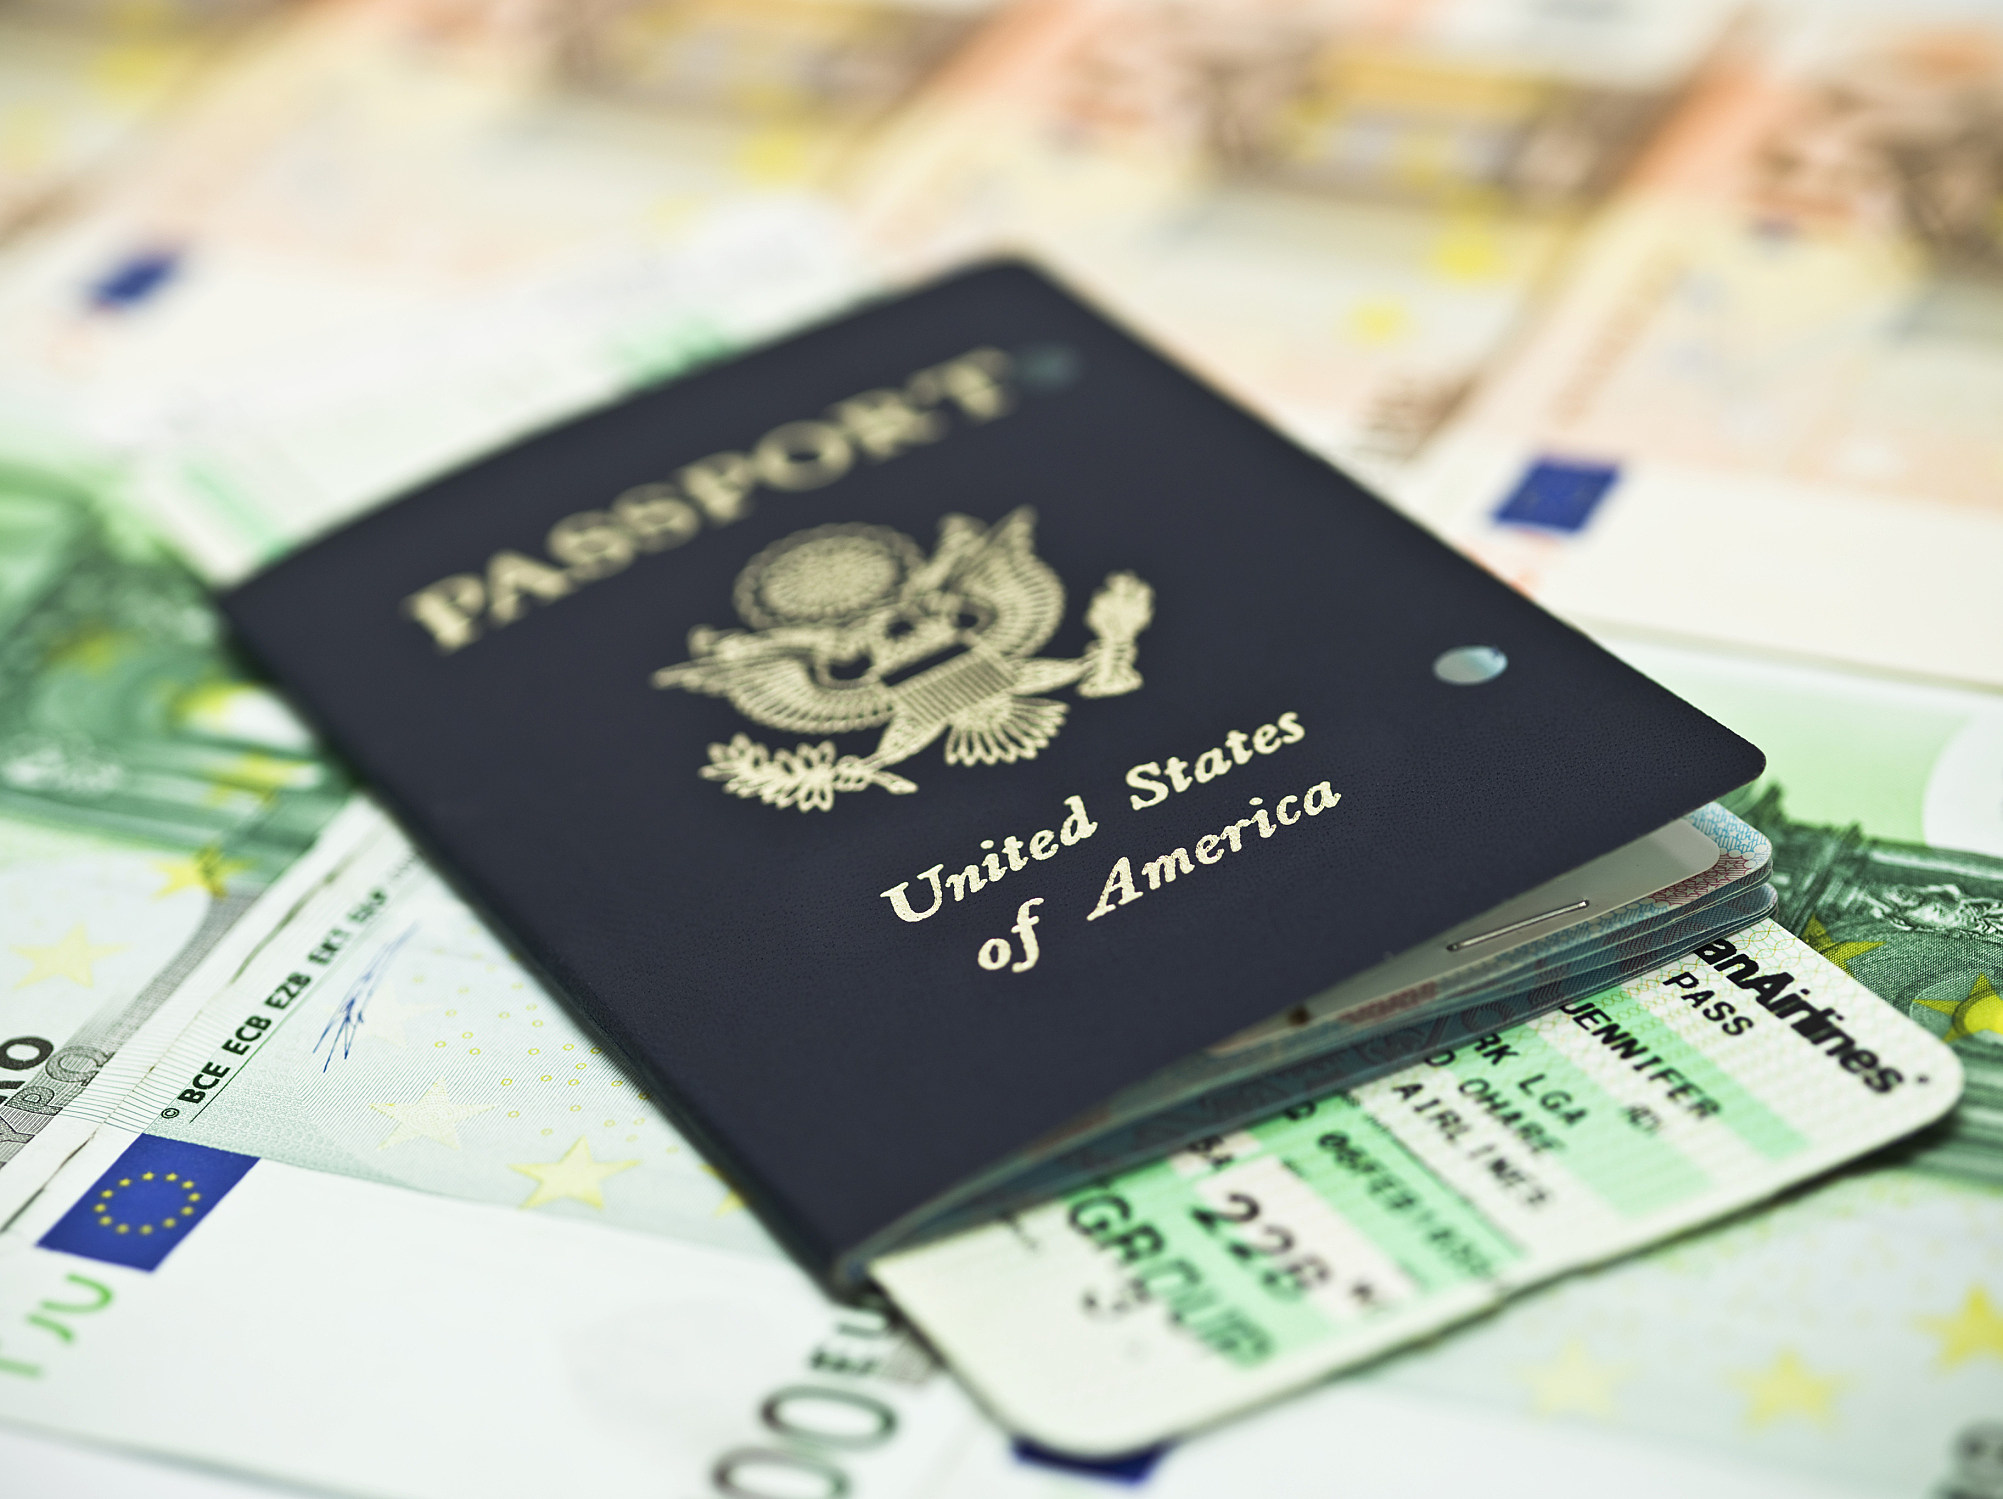 usps scheduler for passport